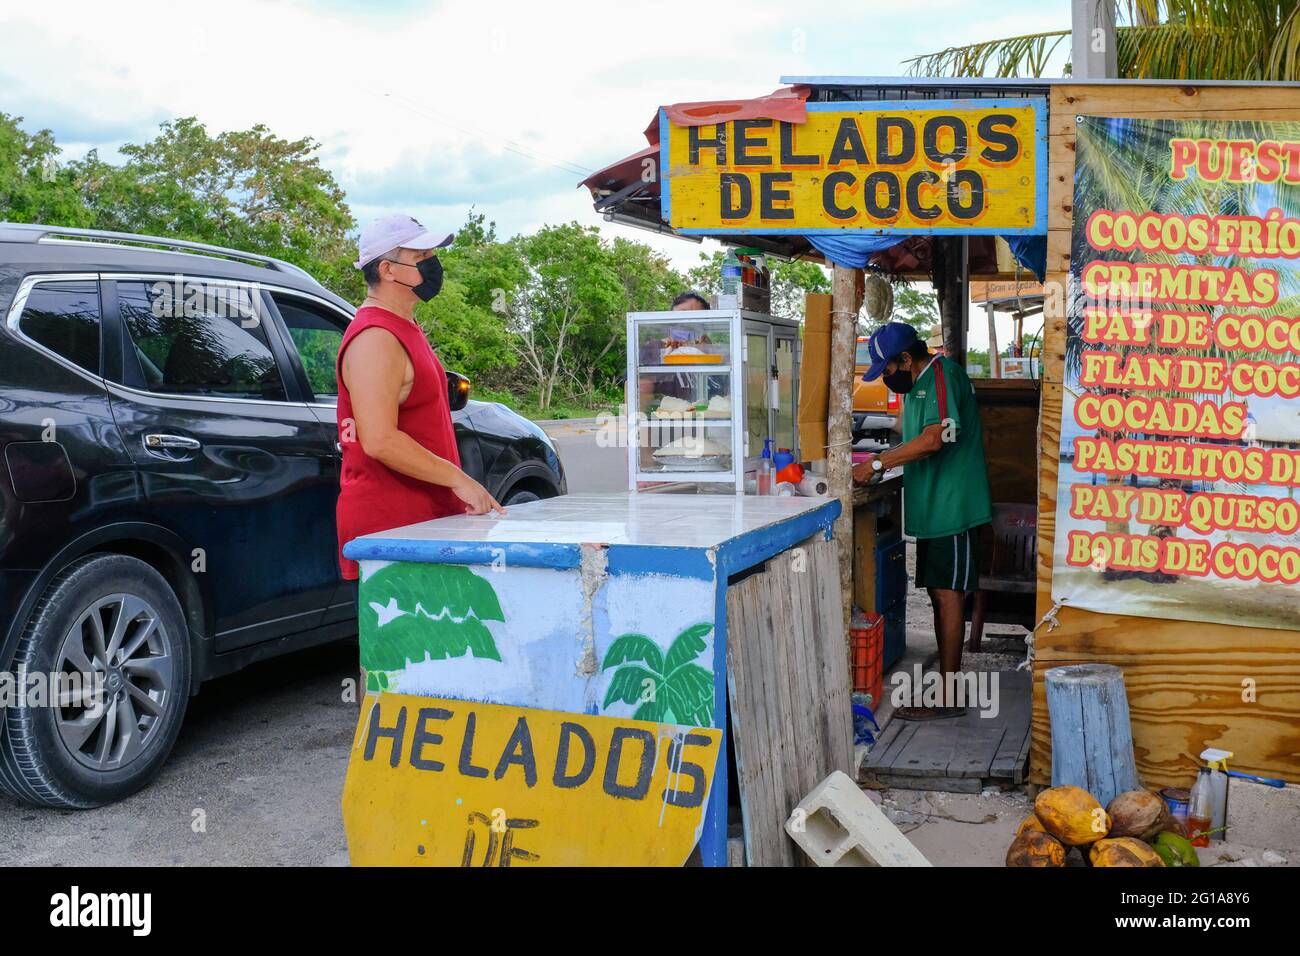 Es wird geschätzt, dass in Mexiko über 600,000 Menschen an Covid-19 (Daten vom Mai 2021) gestorben sind. Viele mexikanische Menschen haben Freunde und Verwandte durch die Krankheit verloren. Überall in Mexiko gibt es vorbeugende Gesundheitsmaßnahmen, um die Ausbreitung des Coronavirus zu verlangsamen. In einem kleinen Laden am Straßenrand wie diesem in Yucatan: Die Kunden und Unternehmer tragen Gesichtsmasken und es gibt ein Händedesinfektionsmittel. Alle kleinen Unternehmen treffen Vorsichtsmaßnahmen, während sie versuchen, offen zu bleiben, um zu überleben Stockfoto